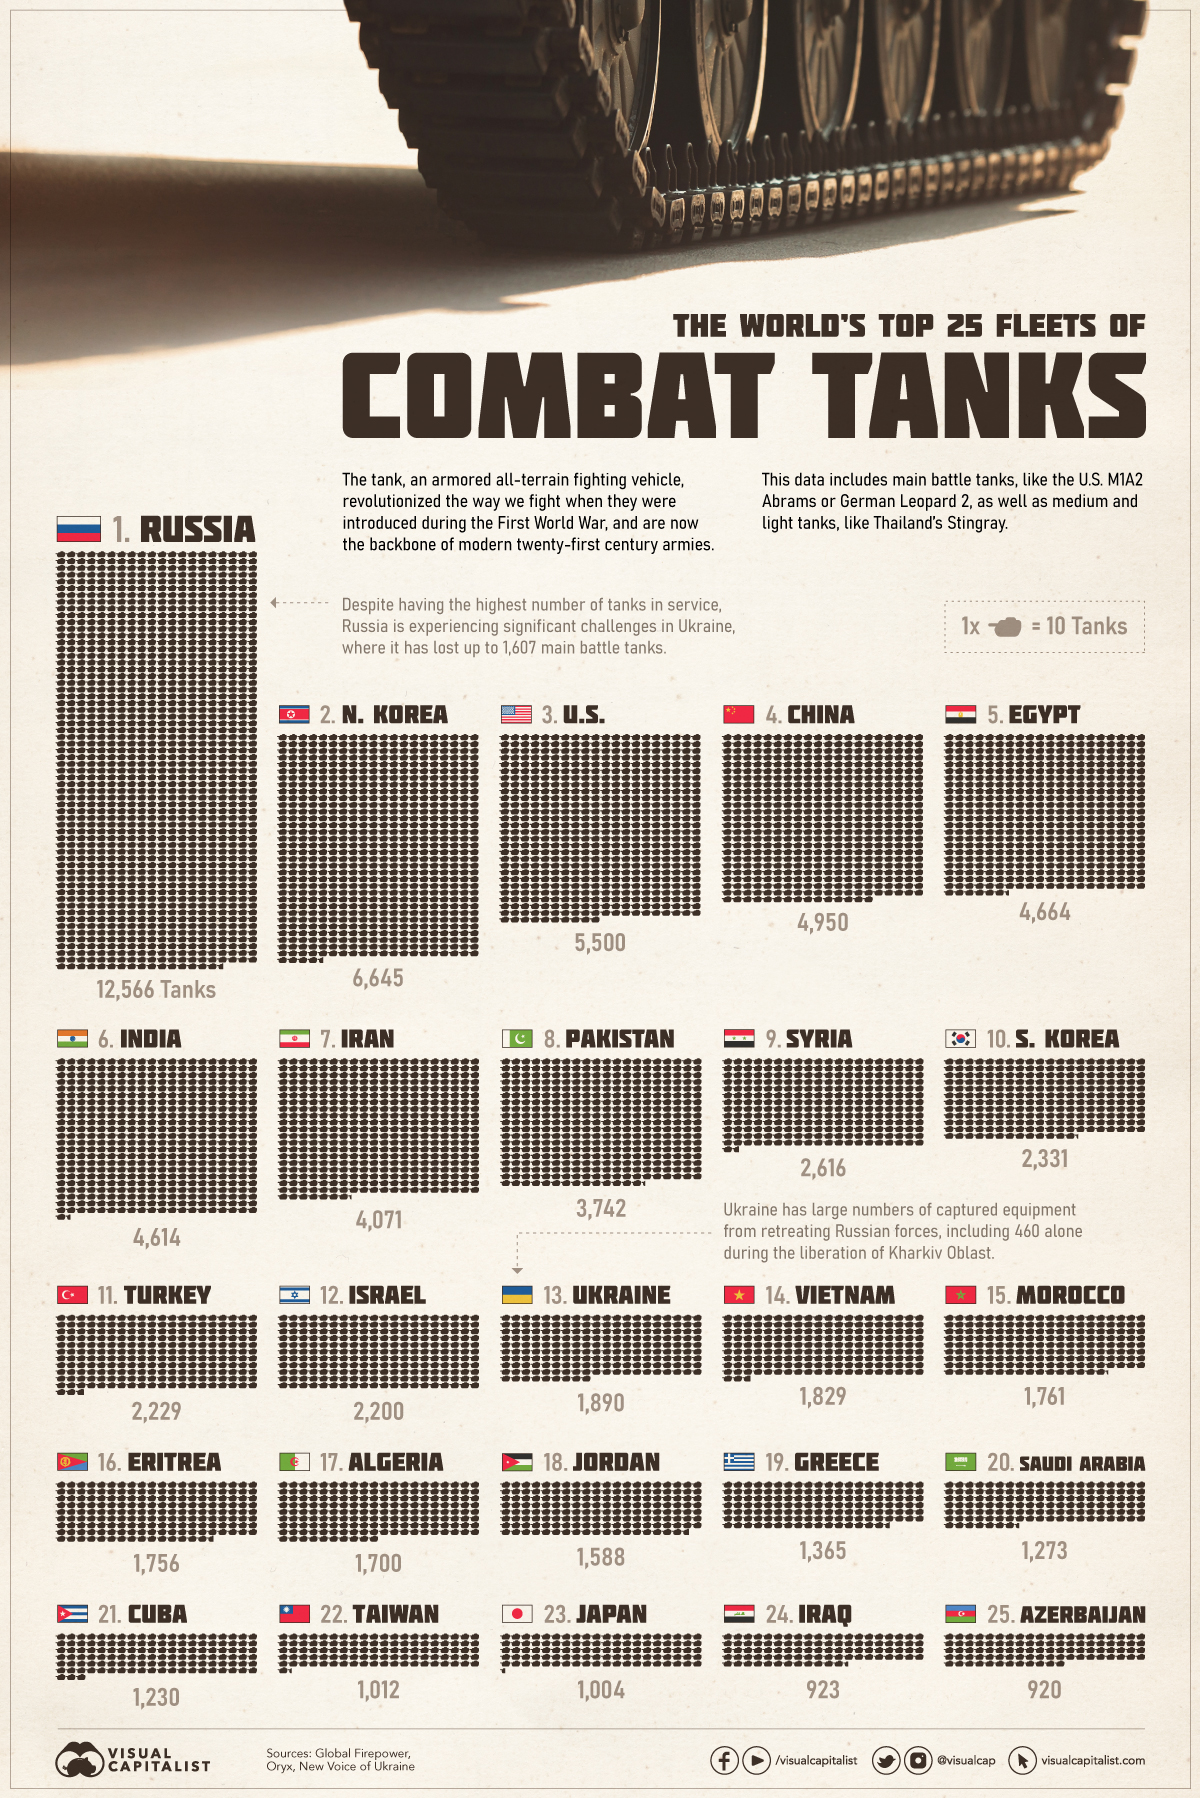 Top 25 Fleets of Combat Tanks